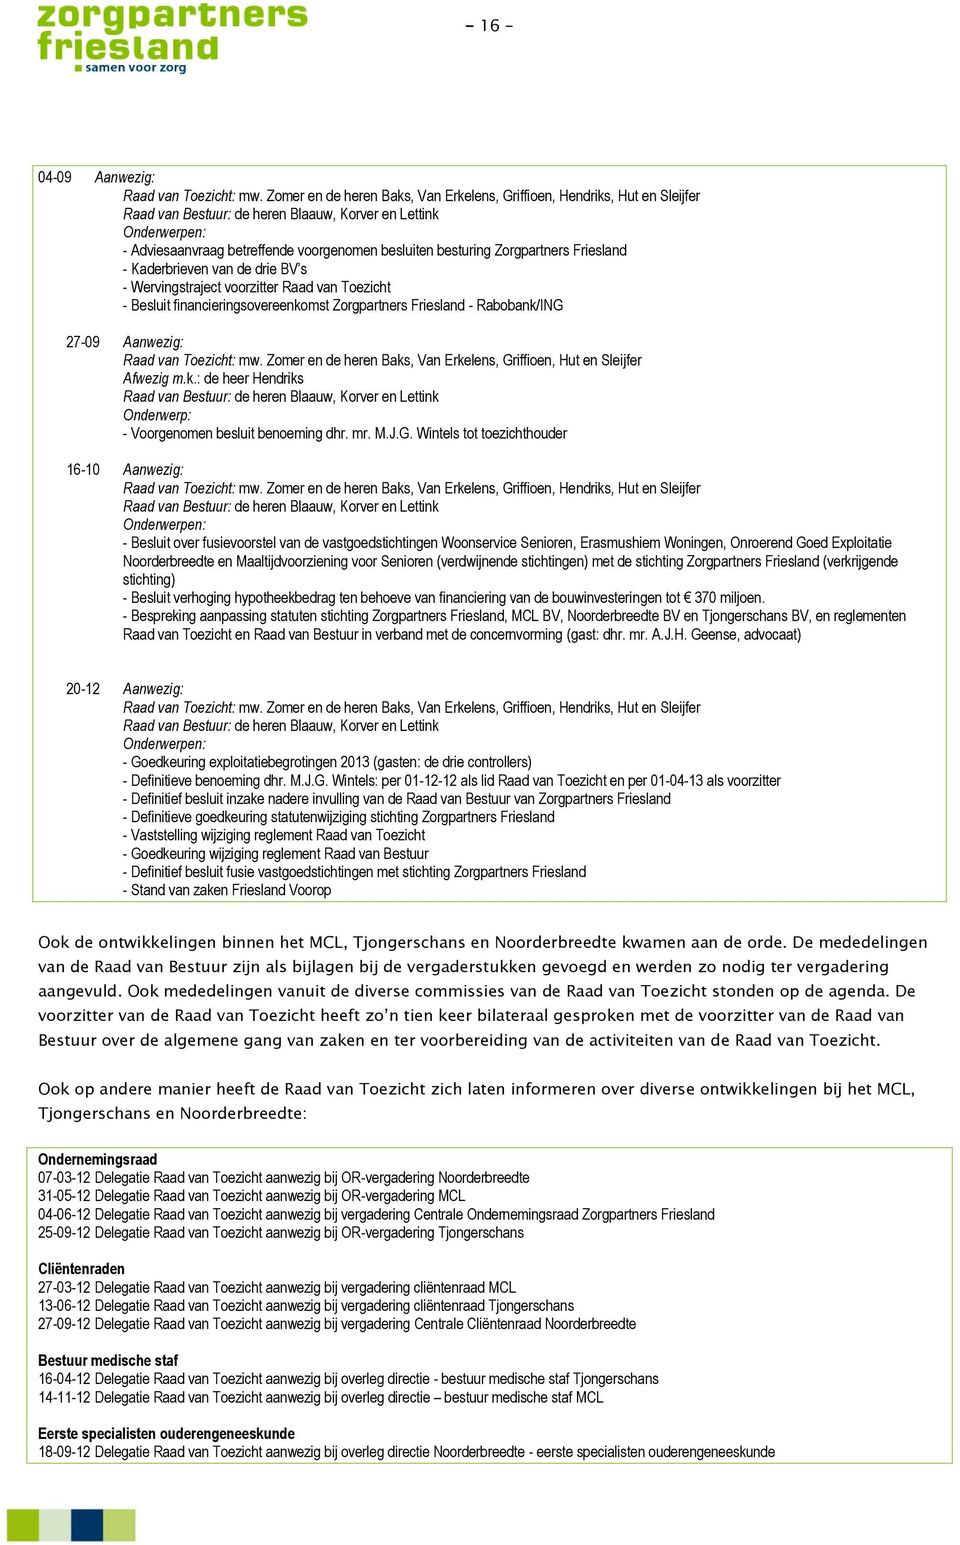 besturing Zorgpartners Friesland - Kaderbrieven van de drie BV s - Wervingstraject voorzitter Raad van Toezicht - Besluit financieringsovereenkomst Zorgpartners Friesland - Rabobank/ING 27-09